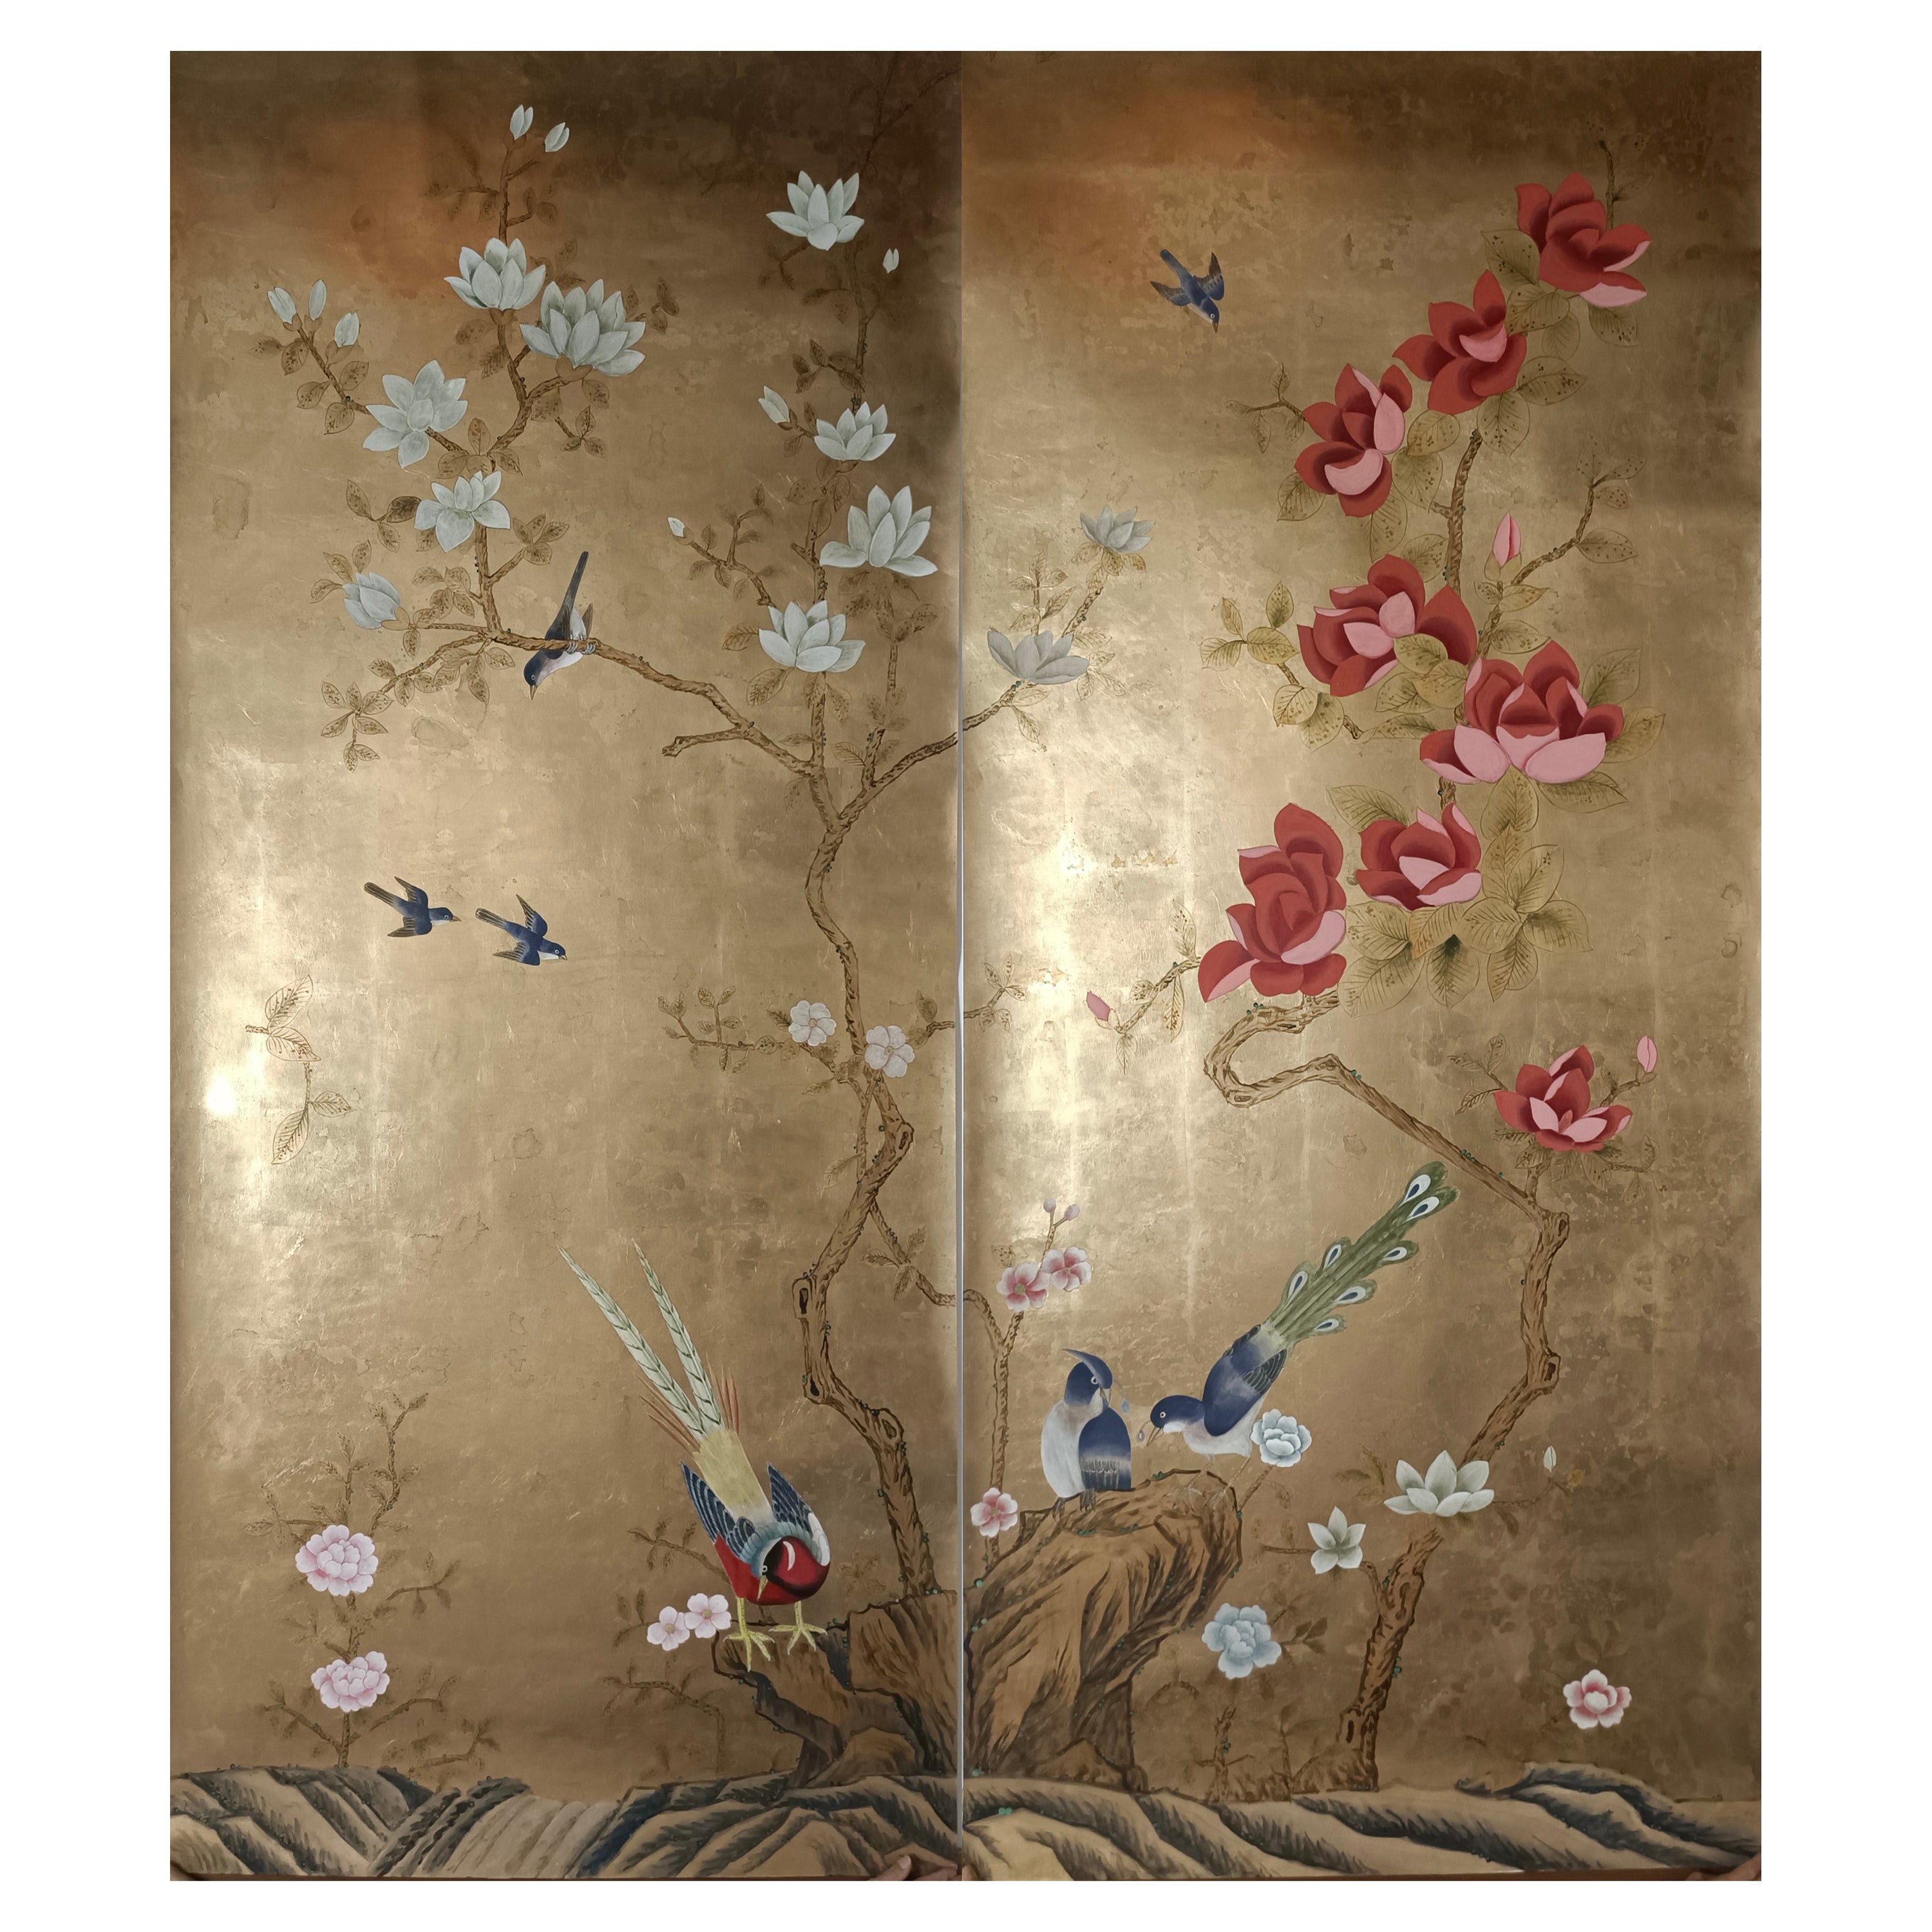 Panneaux chinois peints à la main sur papier peint or métallique avec antiquités